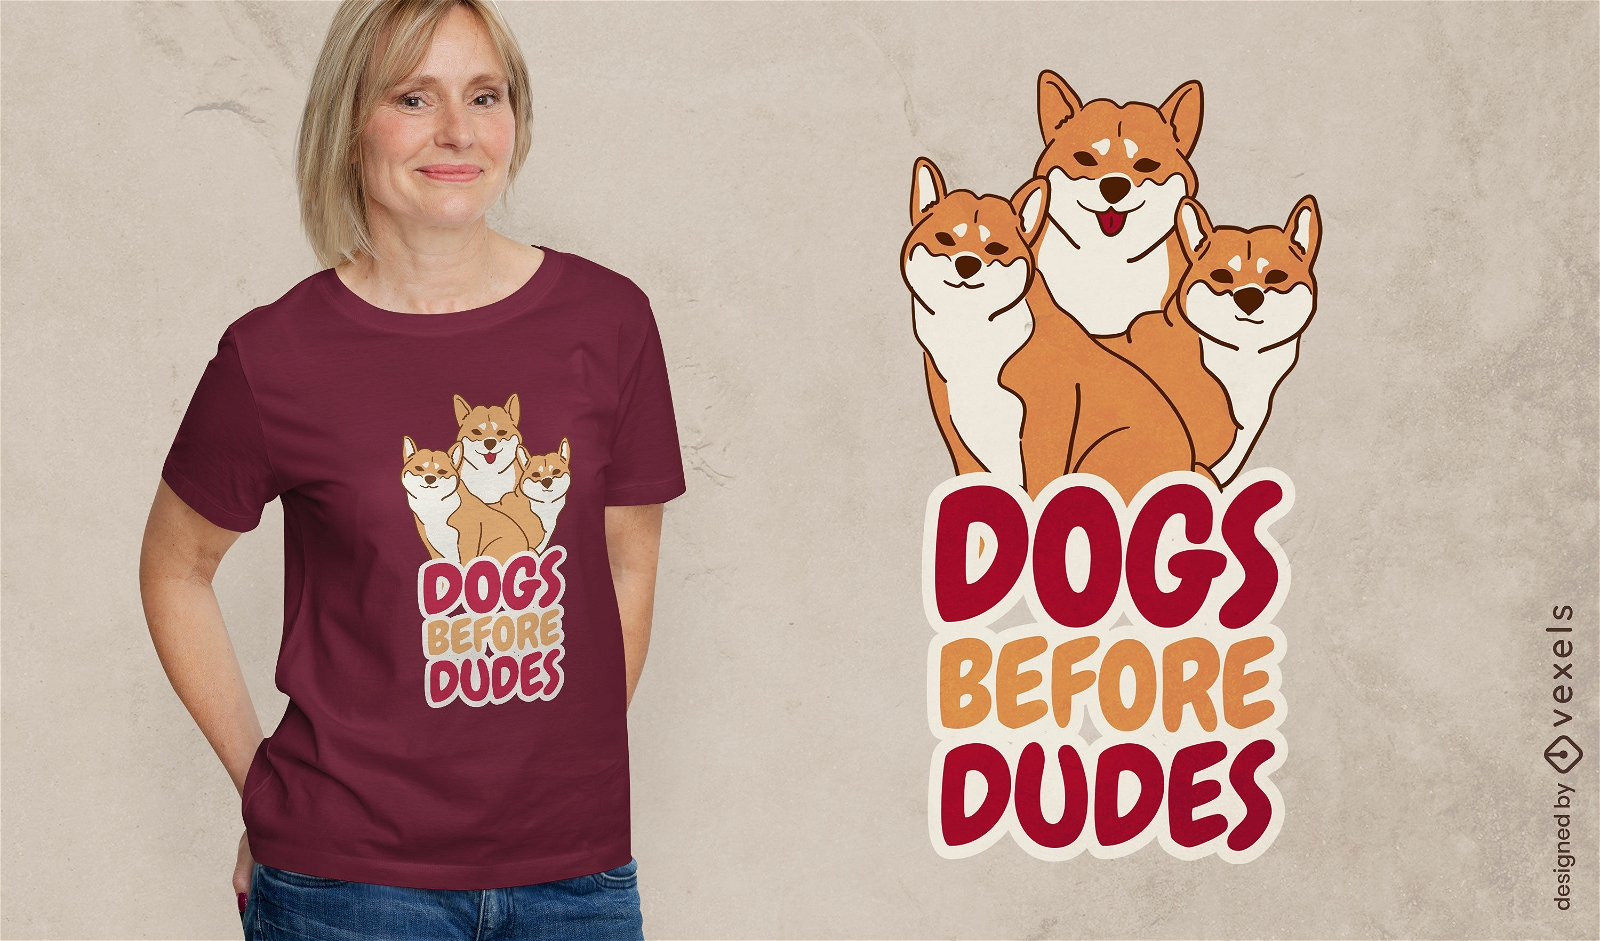 Dise?o de camiseta de perros antes que tipos.